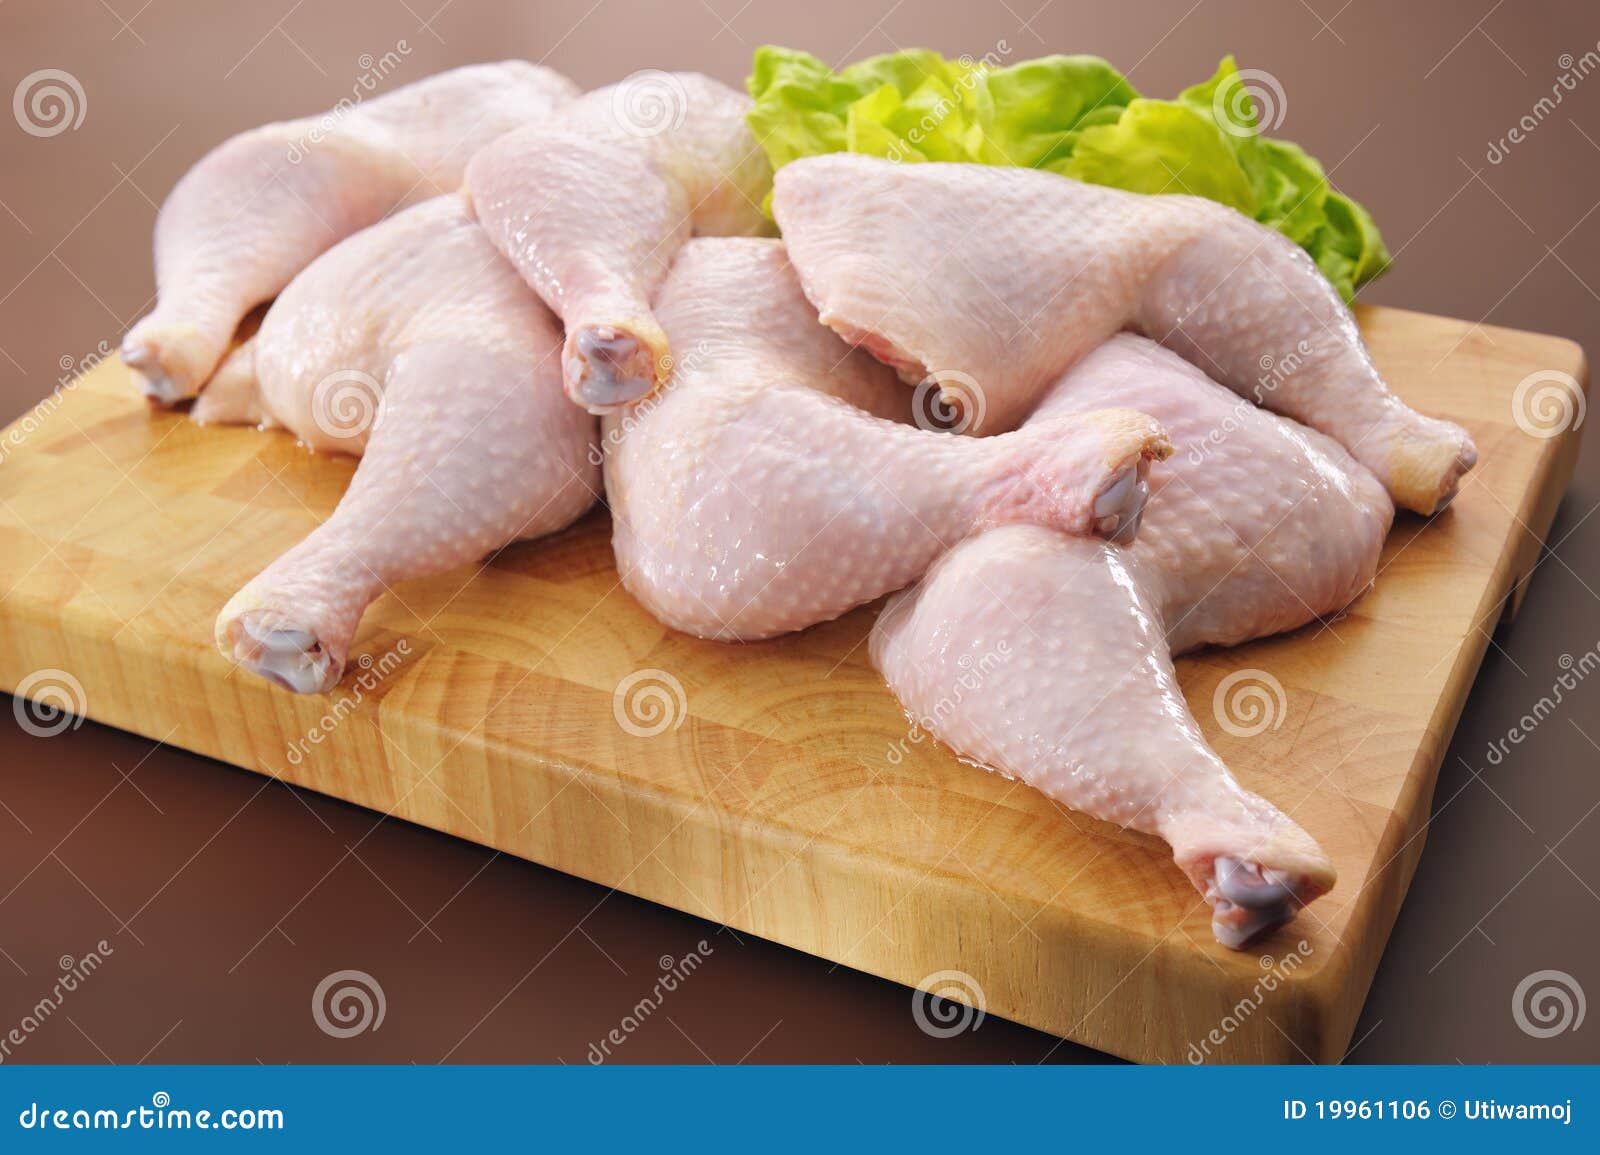 fresh raw chicken legs